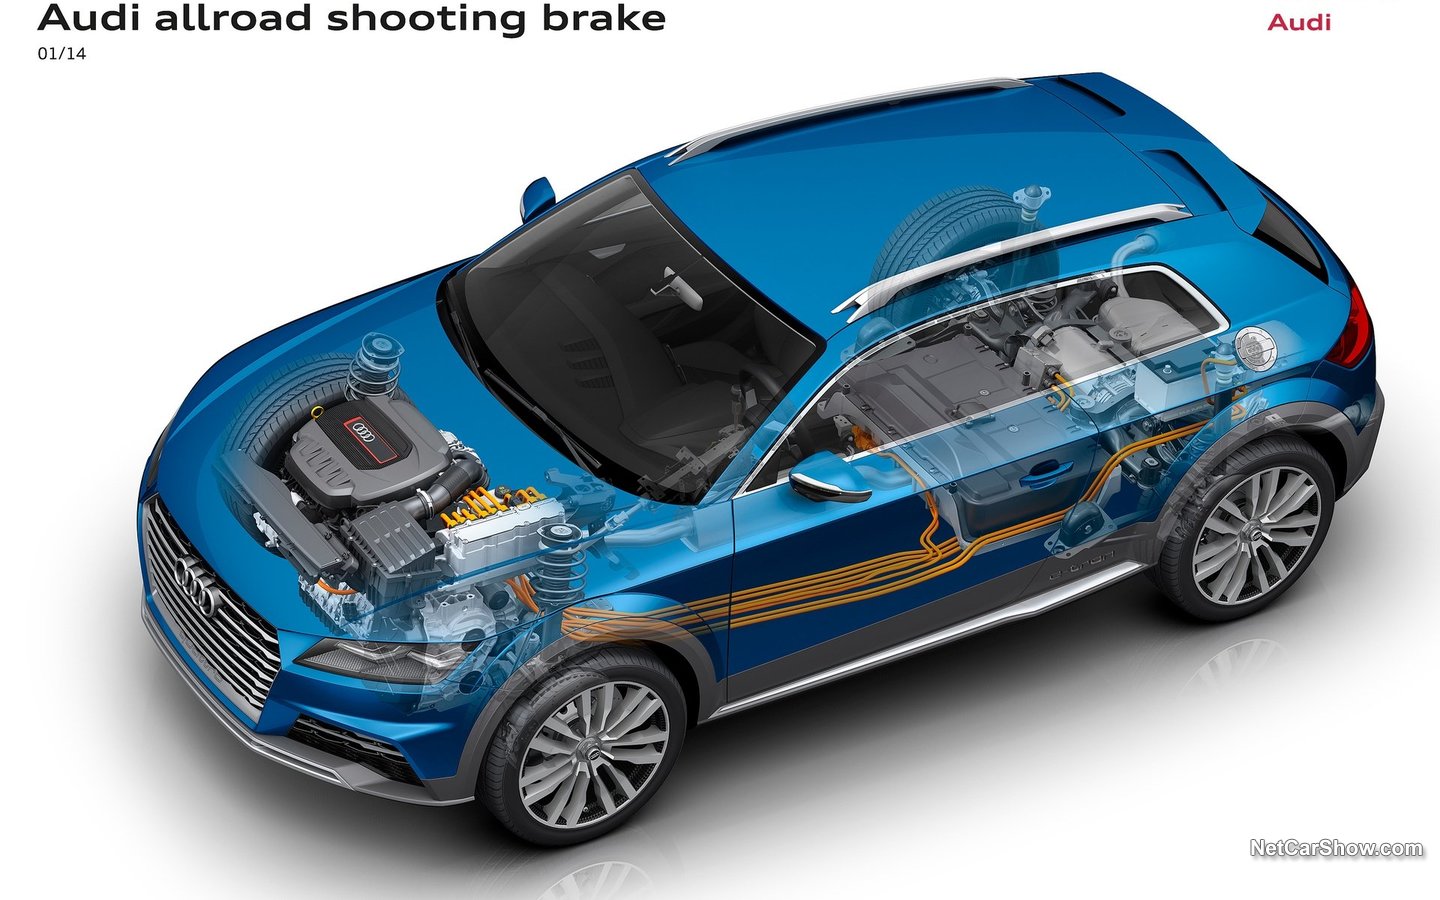 Audi Allroad Shooting Brake Concept 2014 cfbea6400